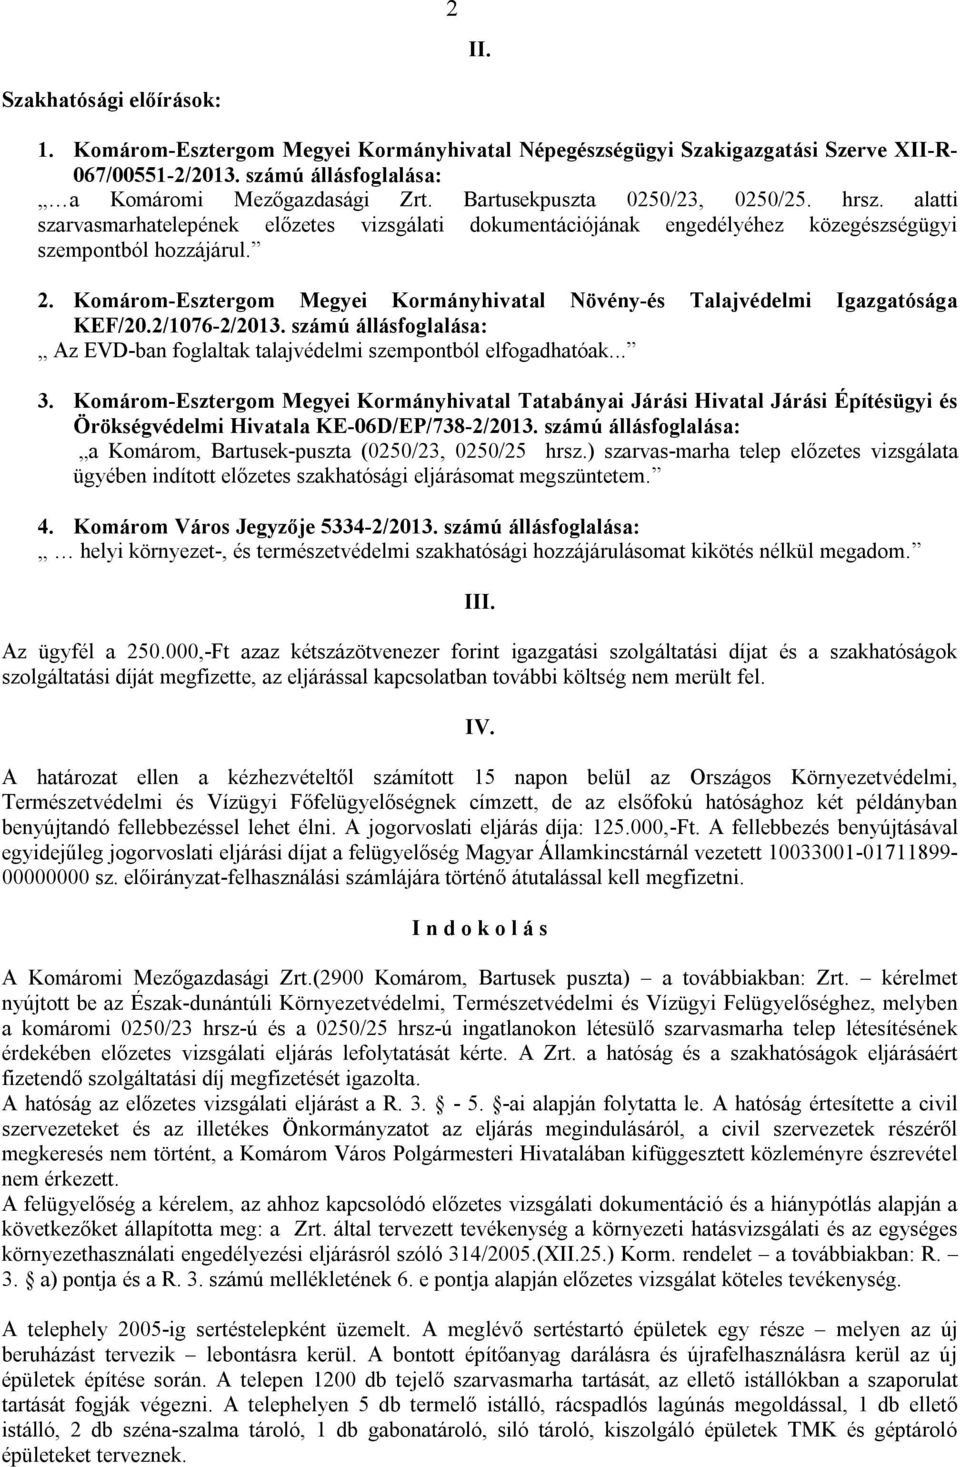 Komárom-Esztergom Megyei Kormányhivatal Növény-és Talajvédelmi Igazgatósága KEF/20.2/1076-2/2013. számú állásfoglalása: Az EVD-ban foglaltak talajvédelmi szempontból elfogadhatóak... 3.